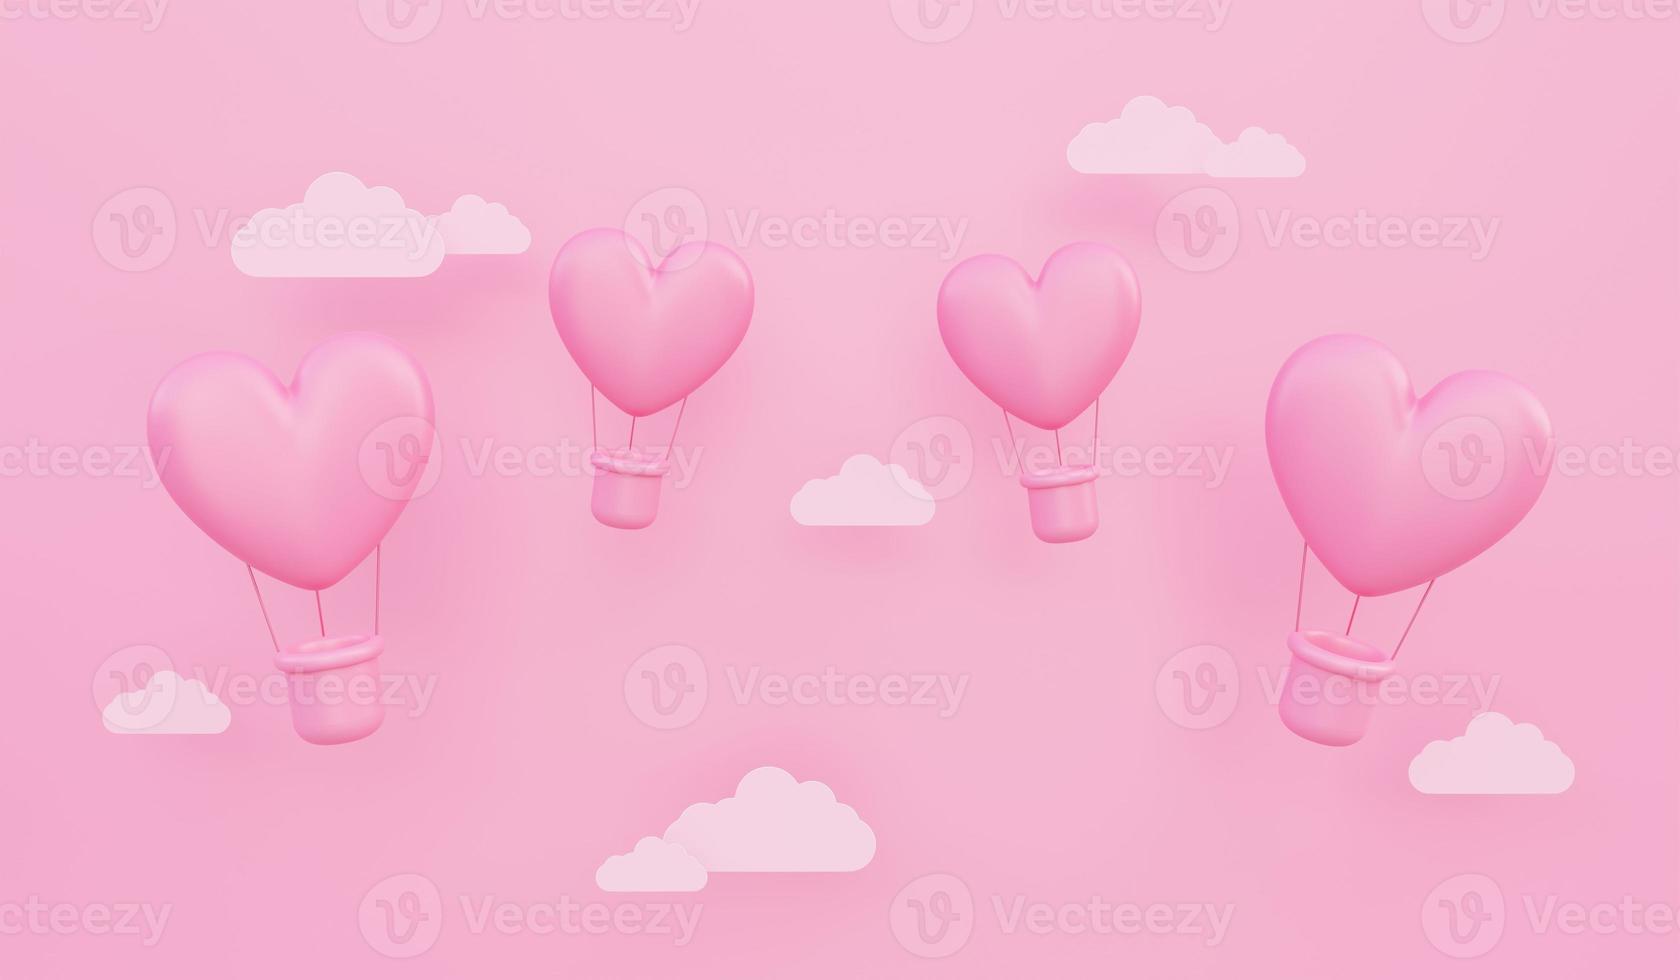 alla hjärtans dag, kärlekskonceptbakgrund, rosa 3d hjärtformade luftballonger som flyger på himlen med pappersmoln foto